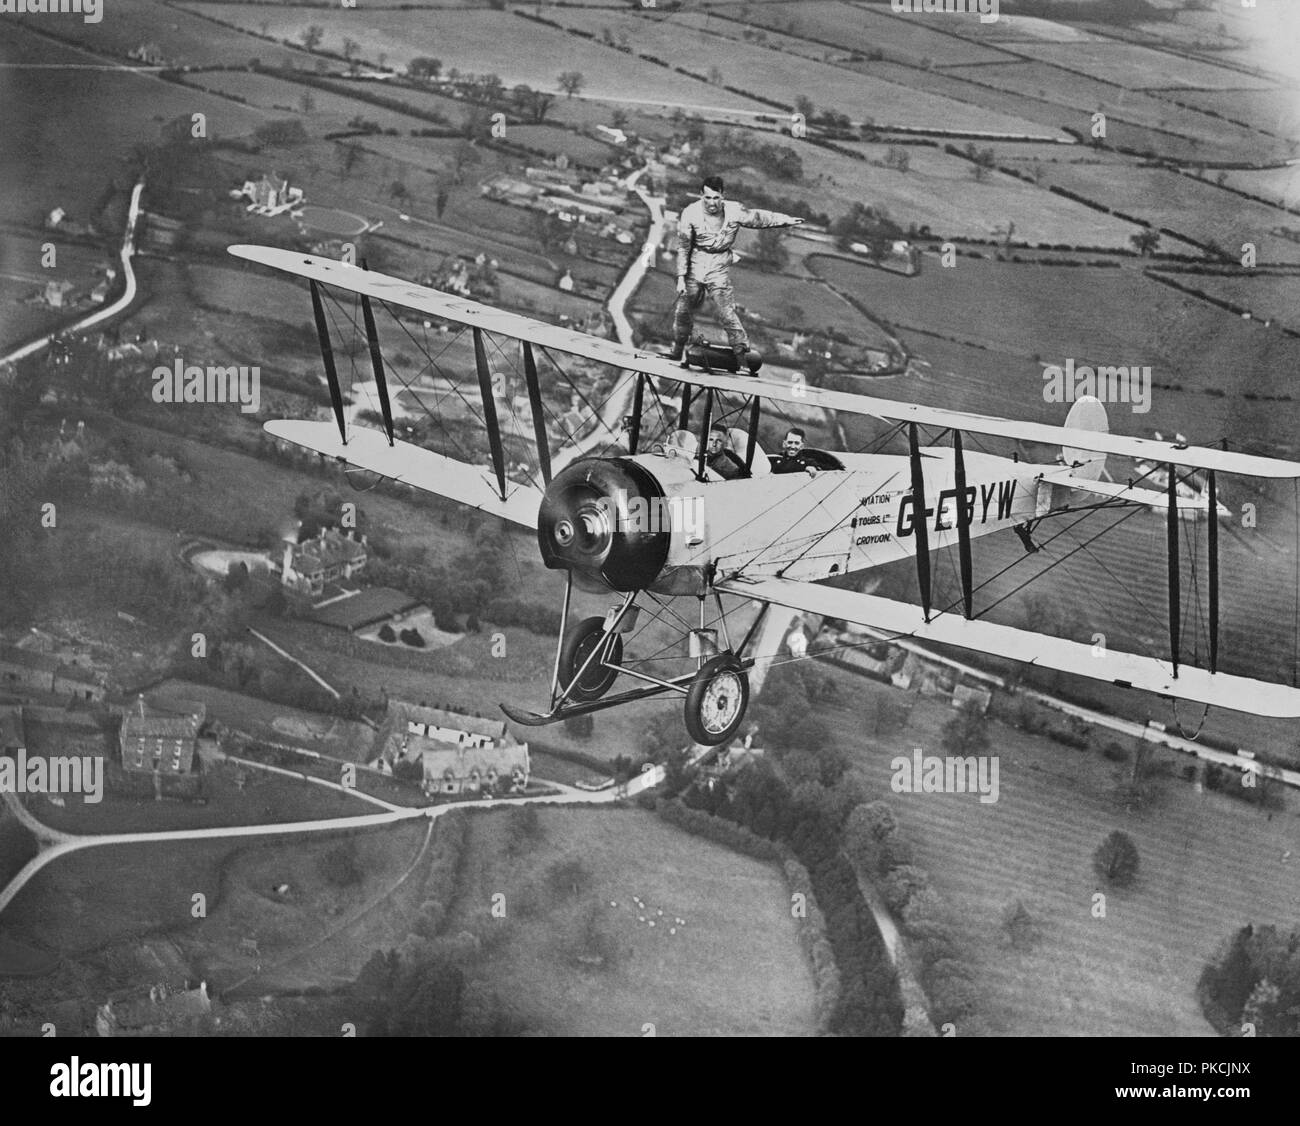 L'aile de l'homme marche sur un biplan Avro 504 sans faisceau, 20e siècle. Artiste : Aerofilms. Banque D'Images